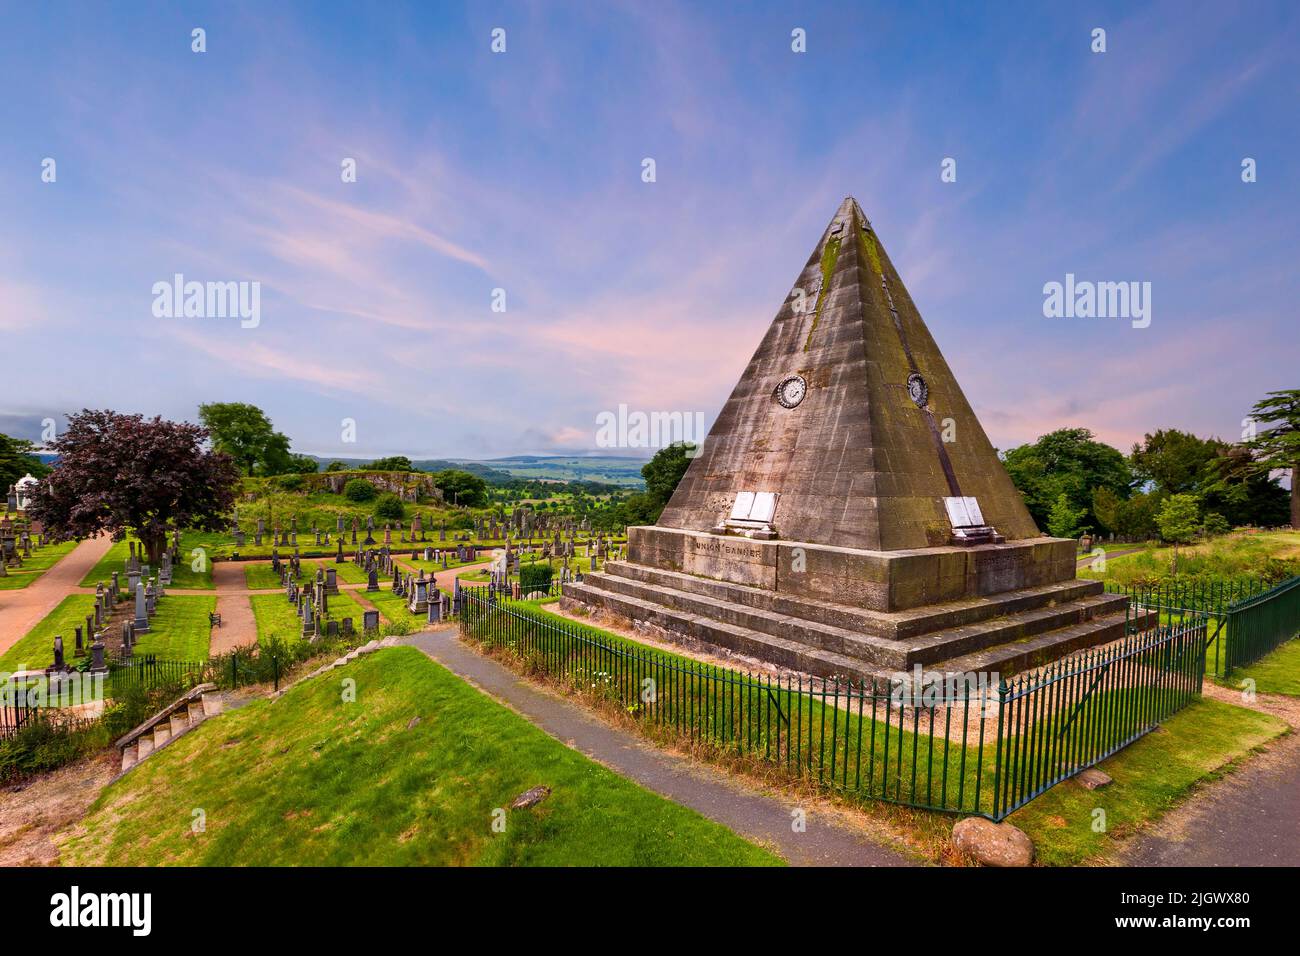 La Pirámide de las Estrellas cerca del Castillo de Stirling, Escocia, Reino Unido. La Pirámide de las Estrellas construida en 1863 por William Drummond. Foto de stock